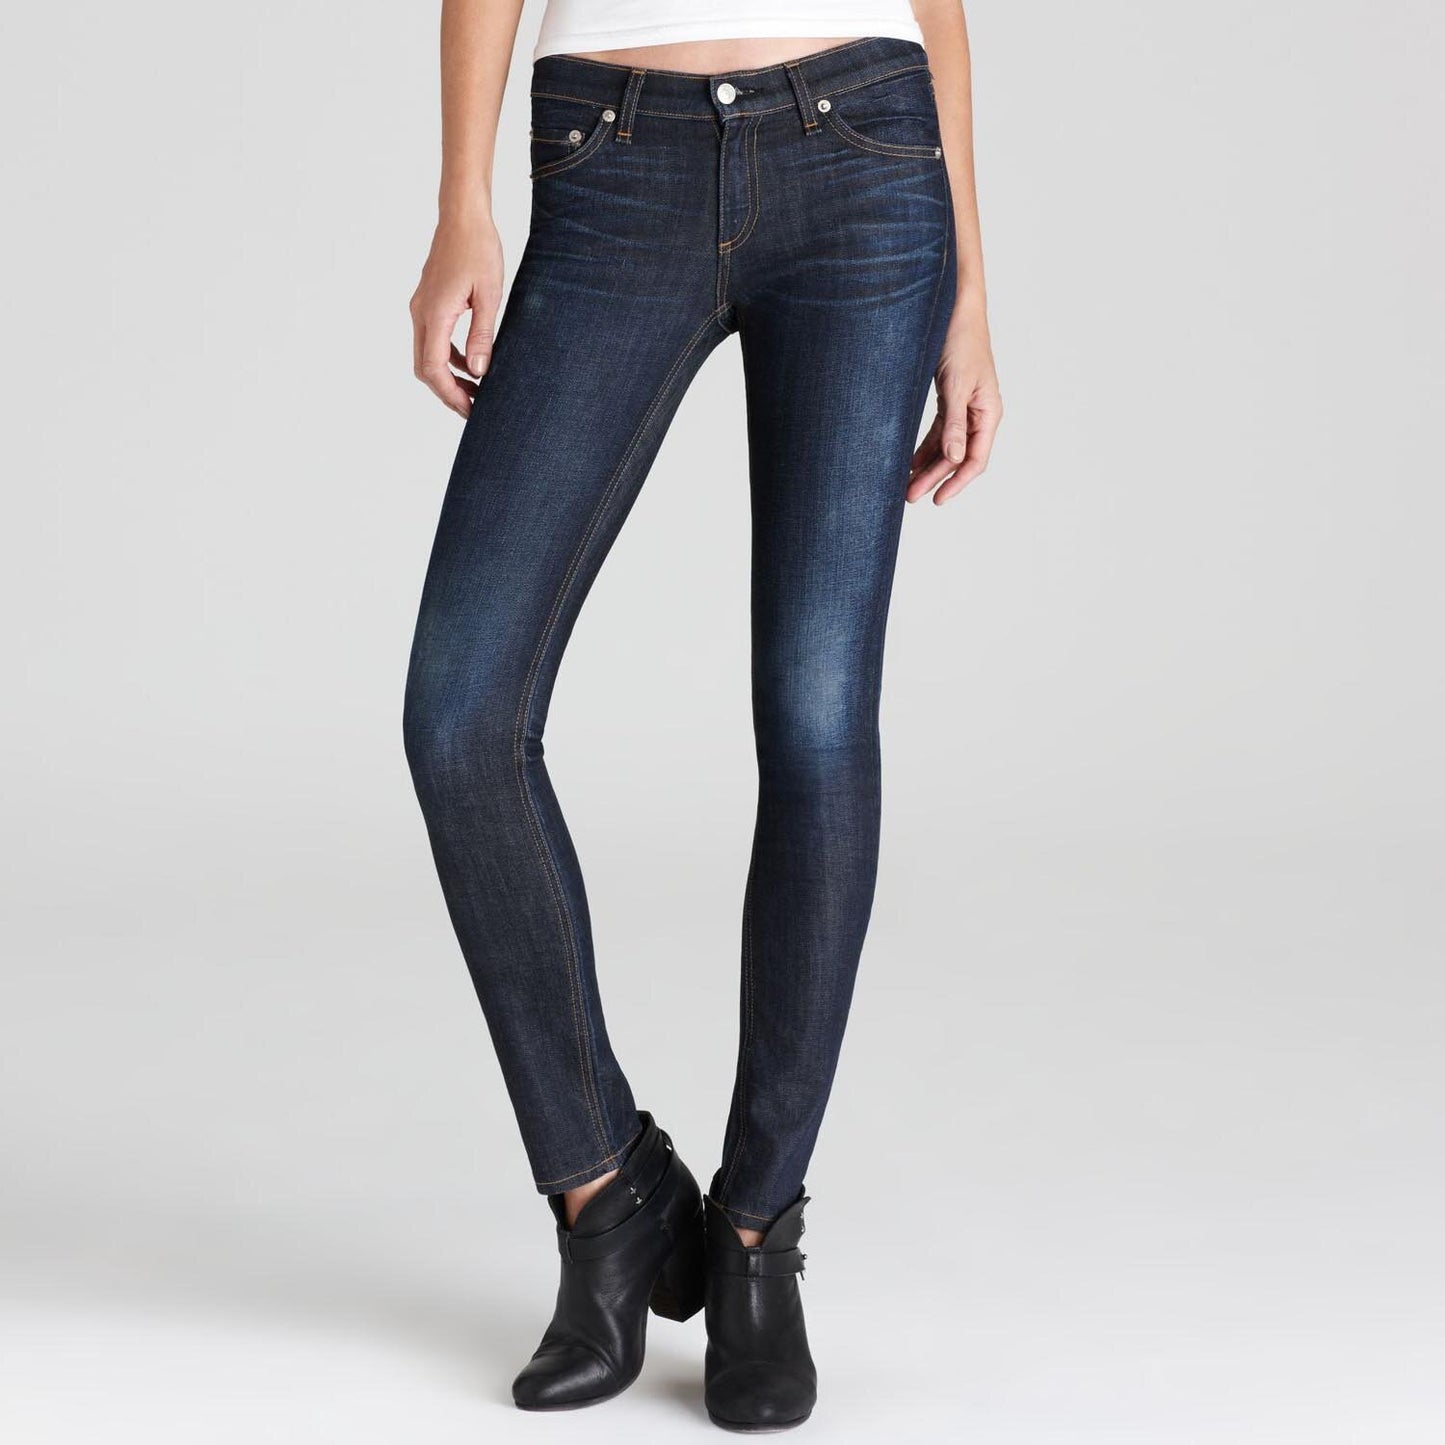 rag & bone skinny jeans in kensington wash - size 26